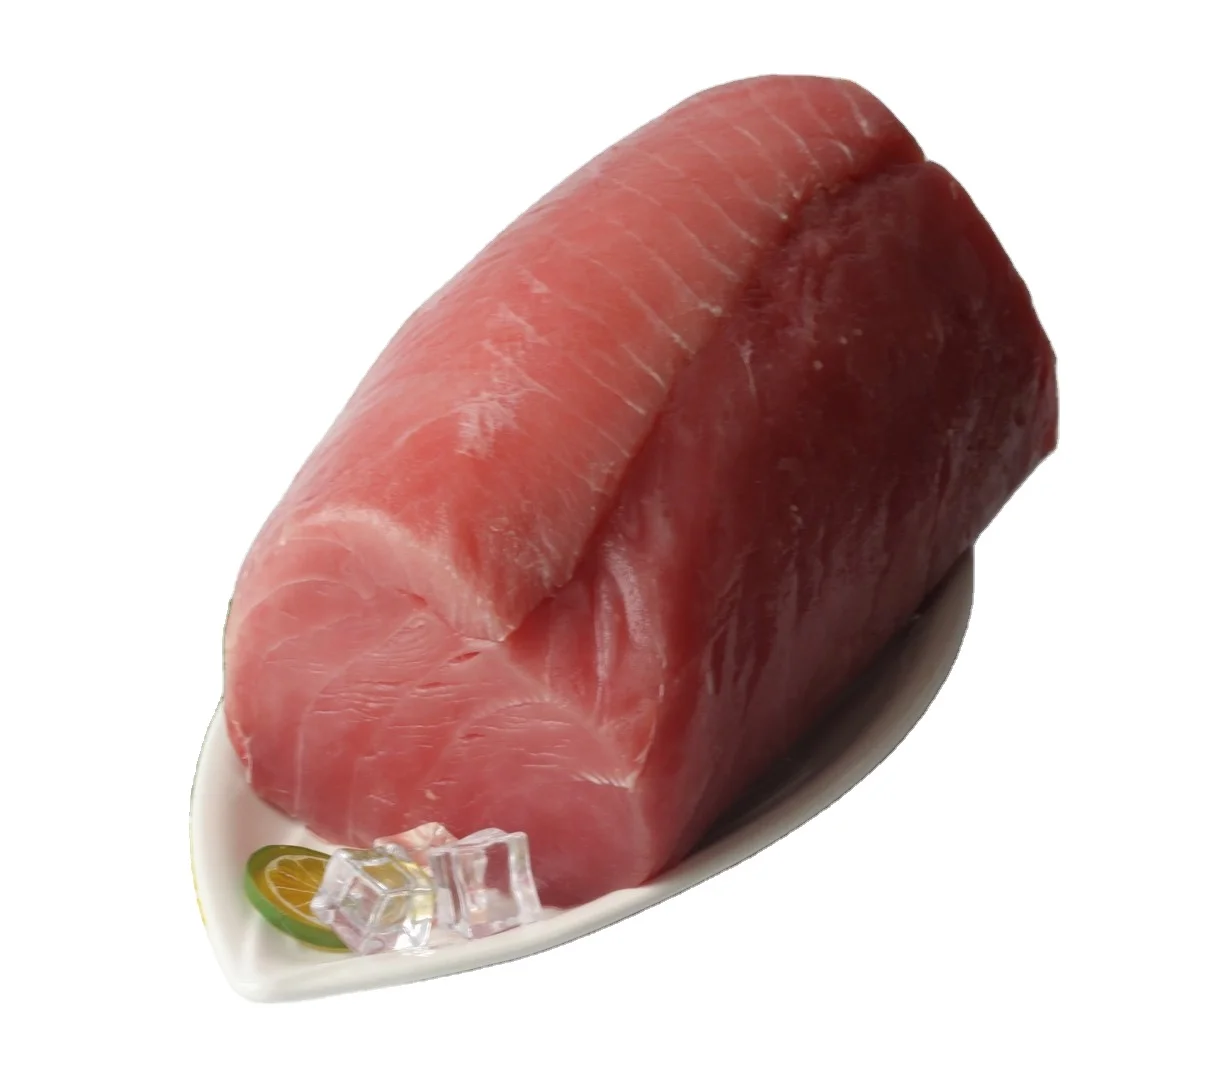 Tuna Yellowfin Tuna Fish Hot selling Frozen on board Fresh Frozen Whole Fish YELLOW FIN TUNA (1600412352013)